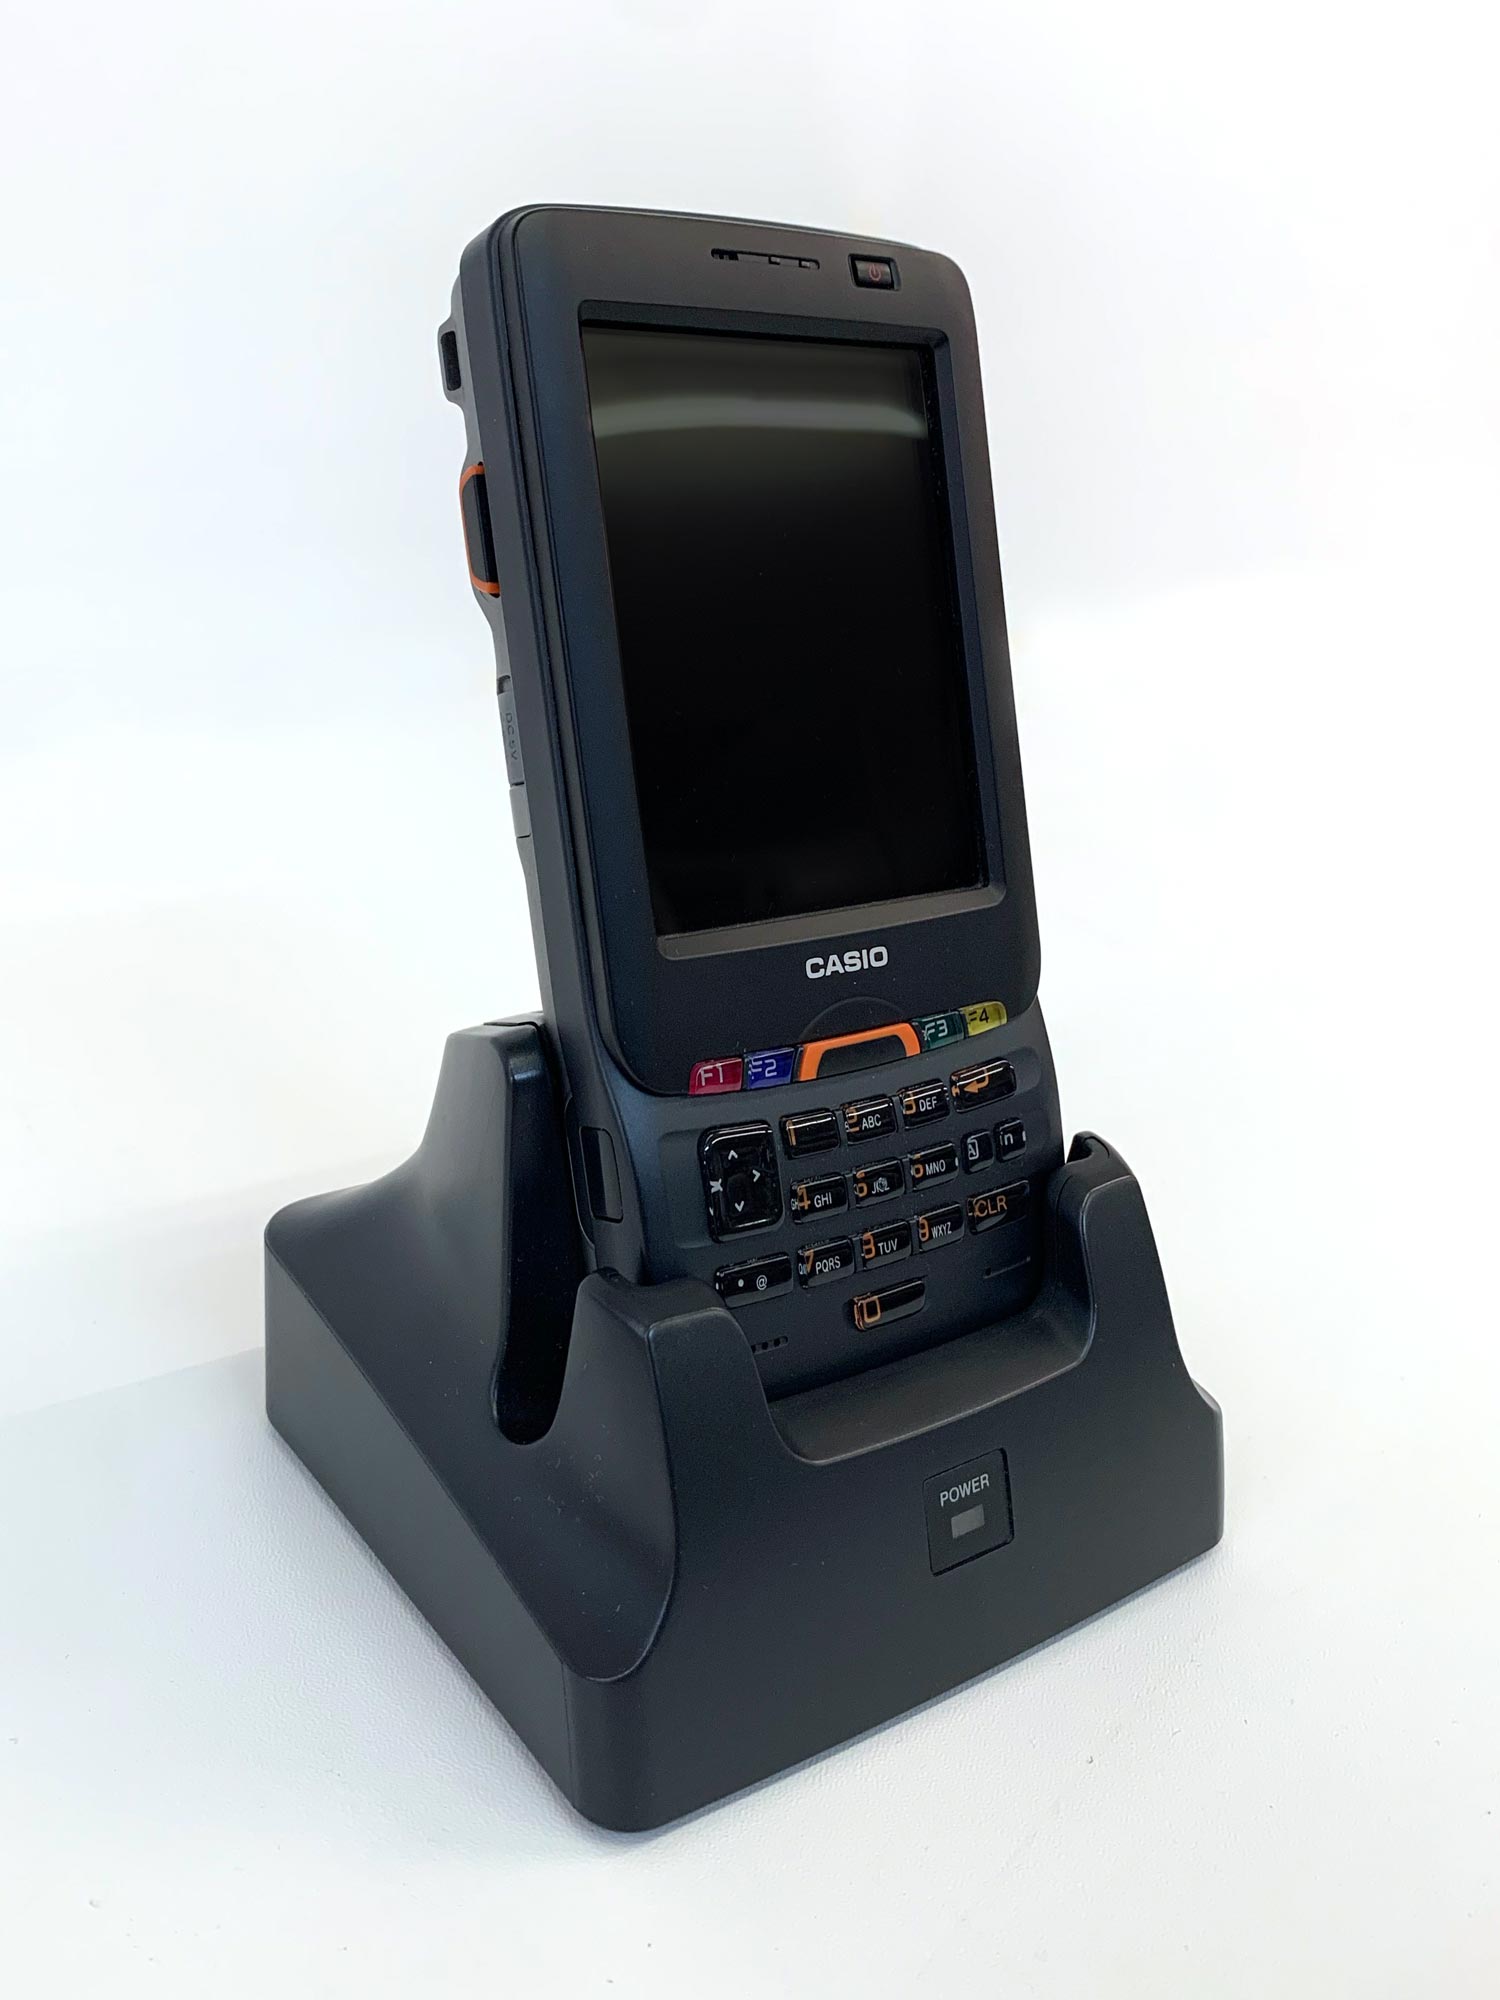 IT-800 - Industrie PDA